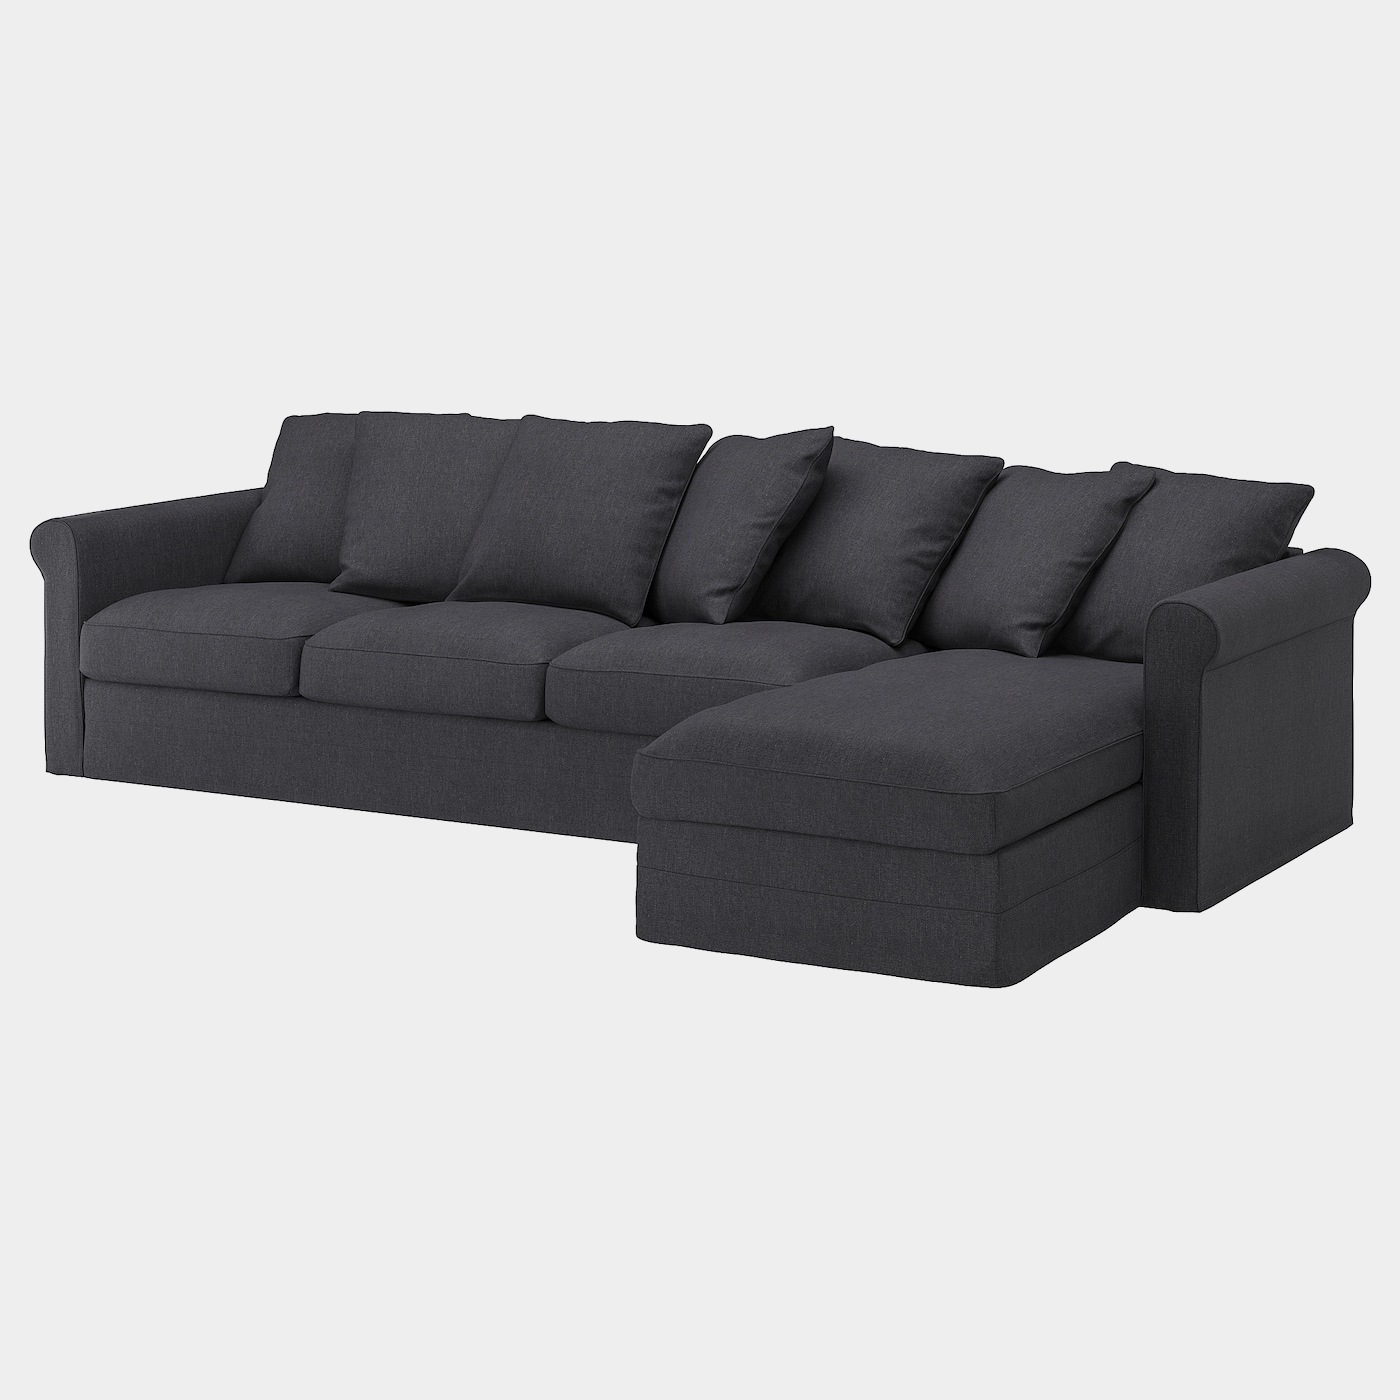 GRÖNLID Bezug 4er-Sofa  - extra Bezüge - Möbel Ideen für dein Zuhause von Home Trends. Möbel Trends von Social Media Influencer für dein Skandi Zuhause.